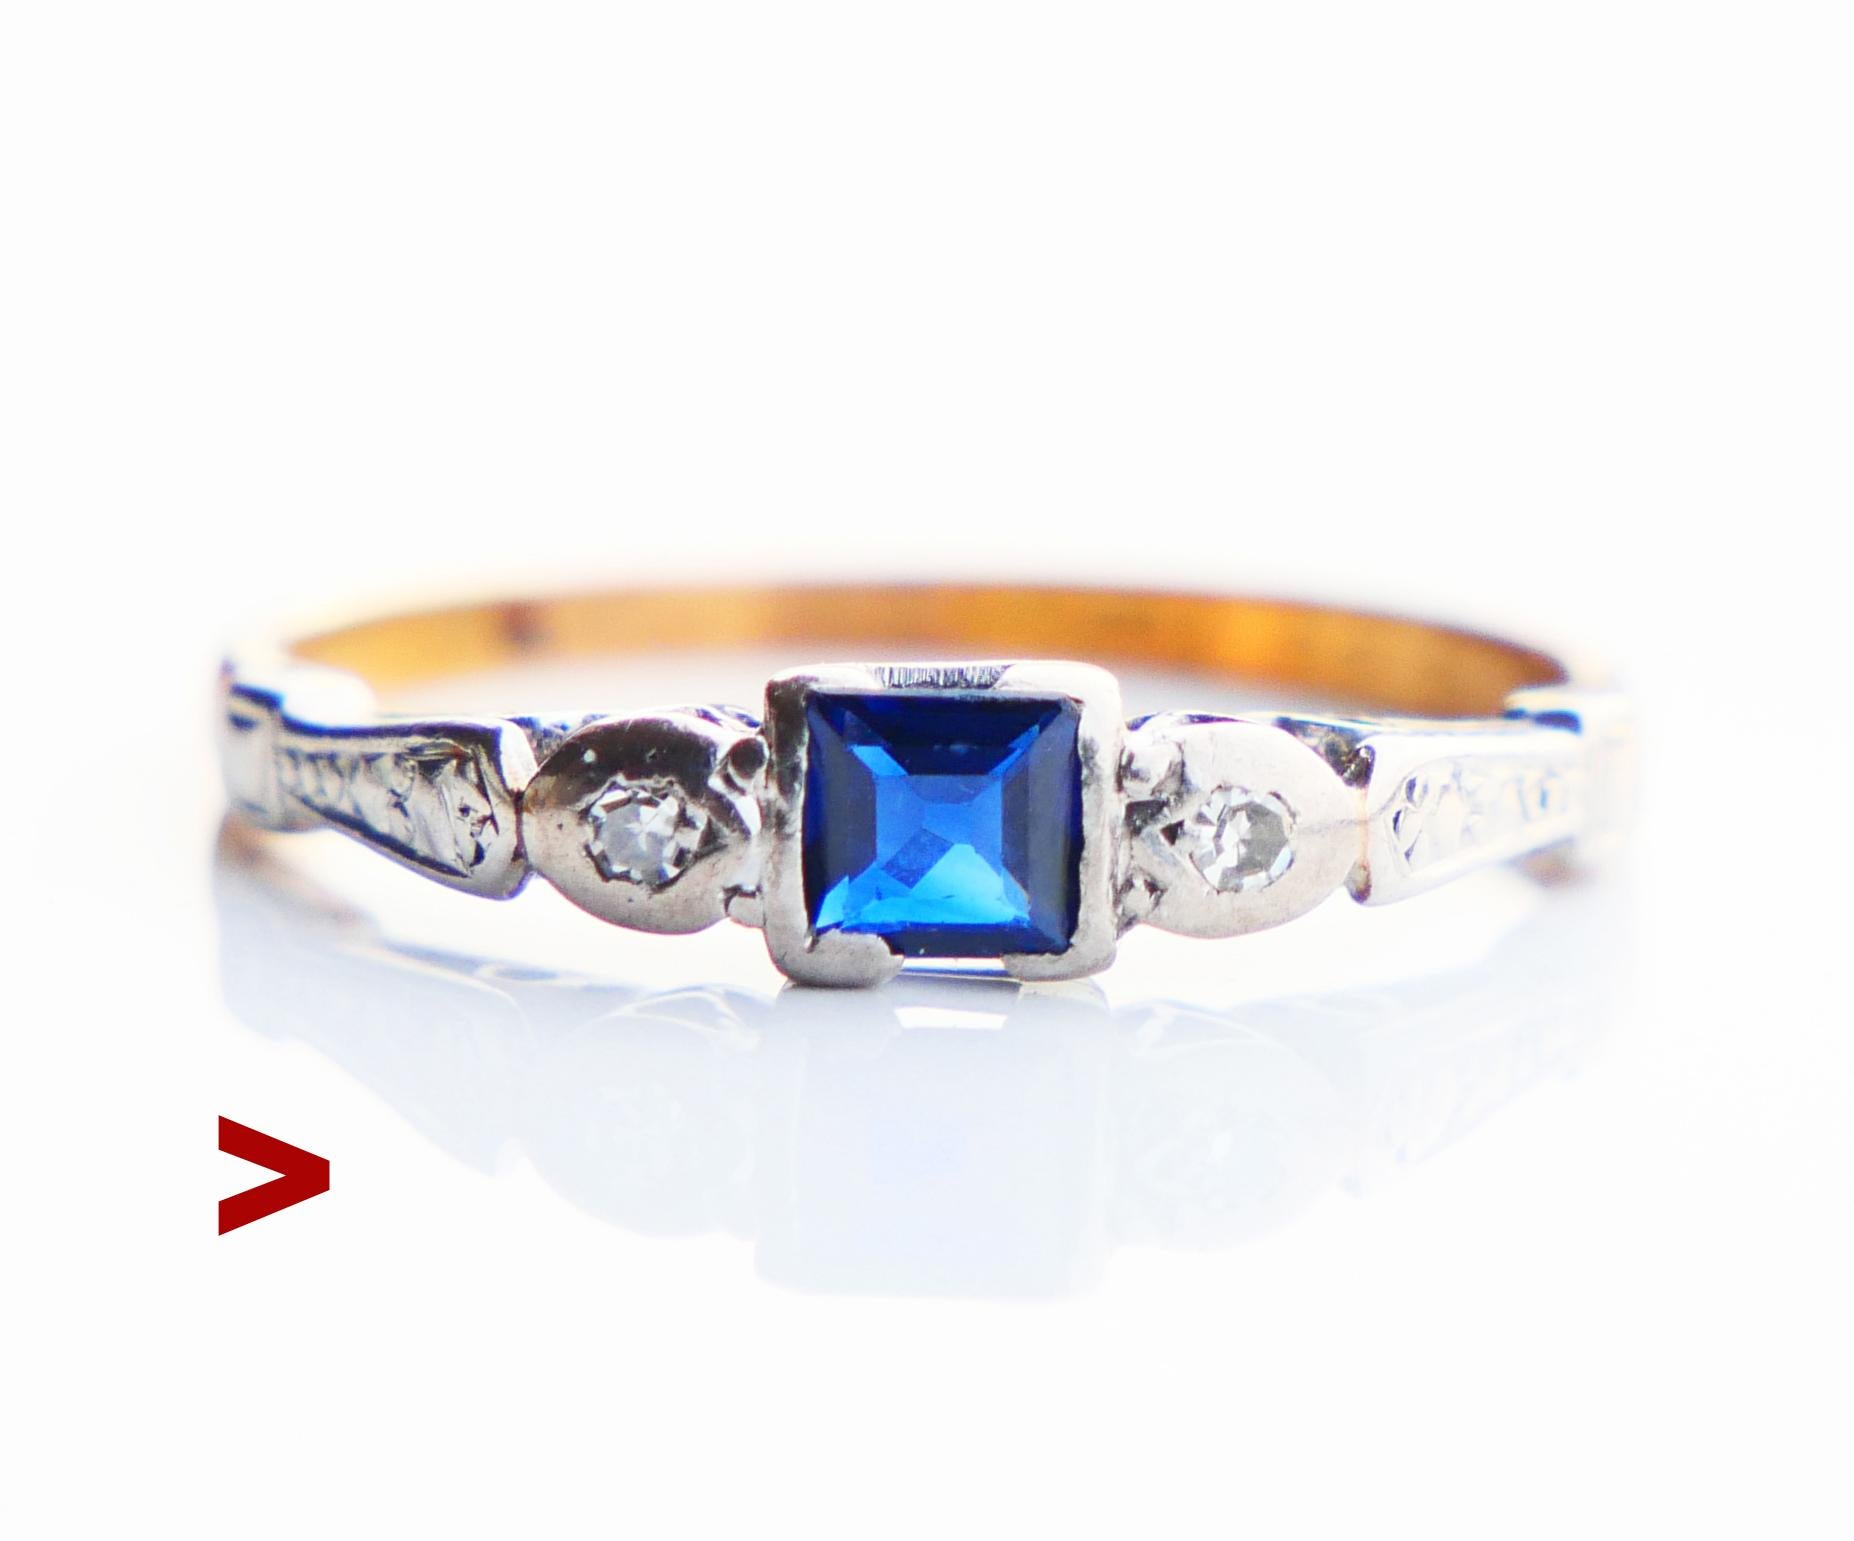 Drei - Steine Ring mit Lünette gefasstem natürlichem Blauen Saphir Stein quadratisch geschliffen 4 mm x 4 mm x 1,8 mm tief / ca. 0,5 ct. und zwei Zacken gefasstem alten Diamant geschliffenen natürlichen Diamanten Ø 2 mm / ca. 0,06ct jeder / F,G /